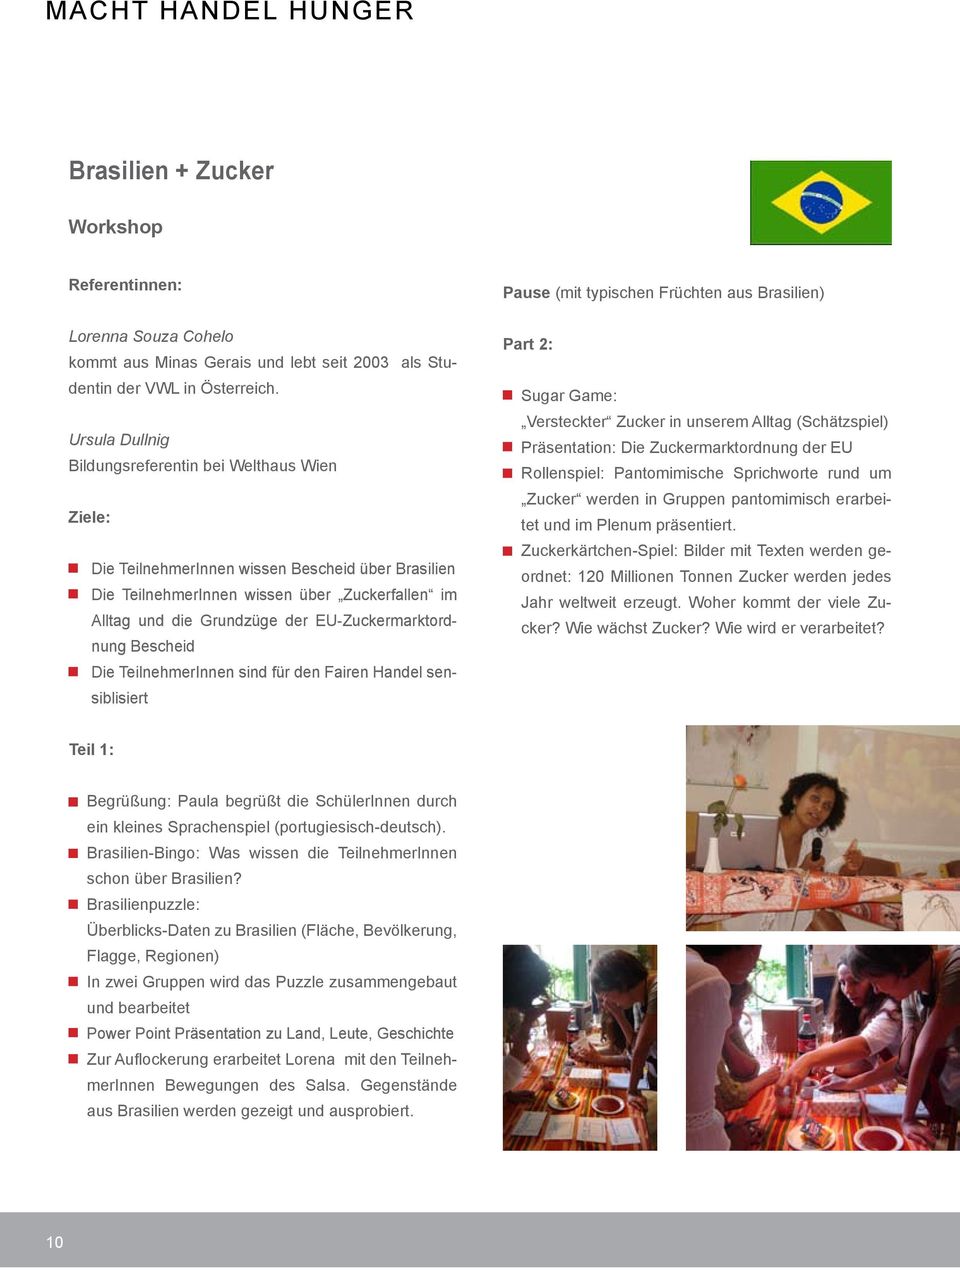 EU-Zuckermarktordnung Bescheid Die TeilnehmerInnen sind für den Fairen Handel sensiblisiert Pause (mit typischen Früchten aus Brasilien) Part 2: Sugar Game: Versteckter Zucker in unserem Alltag